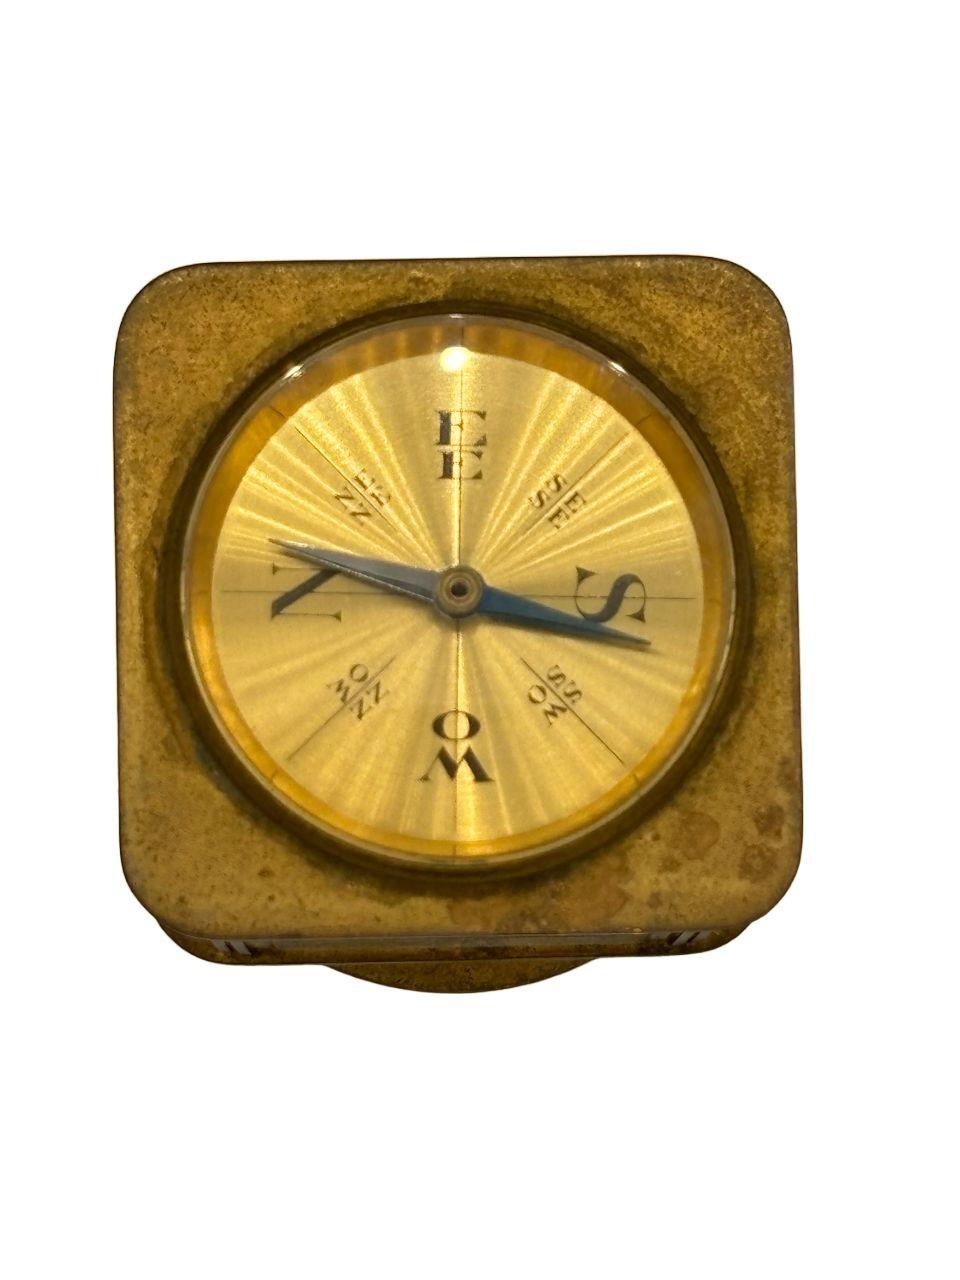 Massive Tischuhr aus Messing mit 8-Tage-Uhrwerk, mit Thermometer, Barometer, Hygrometer und Kompass (in Celsius und Fahrenheit) der Angelus Meteo Watch Company aus der Zeit des Art Deco

CIRCA 1930er Jahre, von Angelus Meteo, Schweiz


Diese